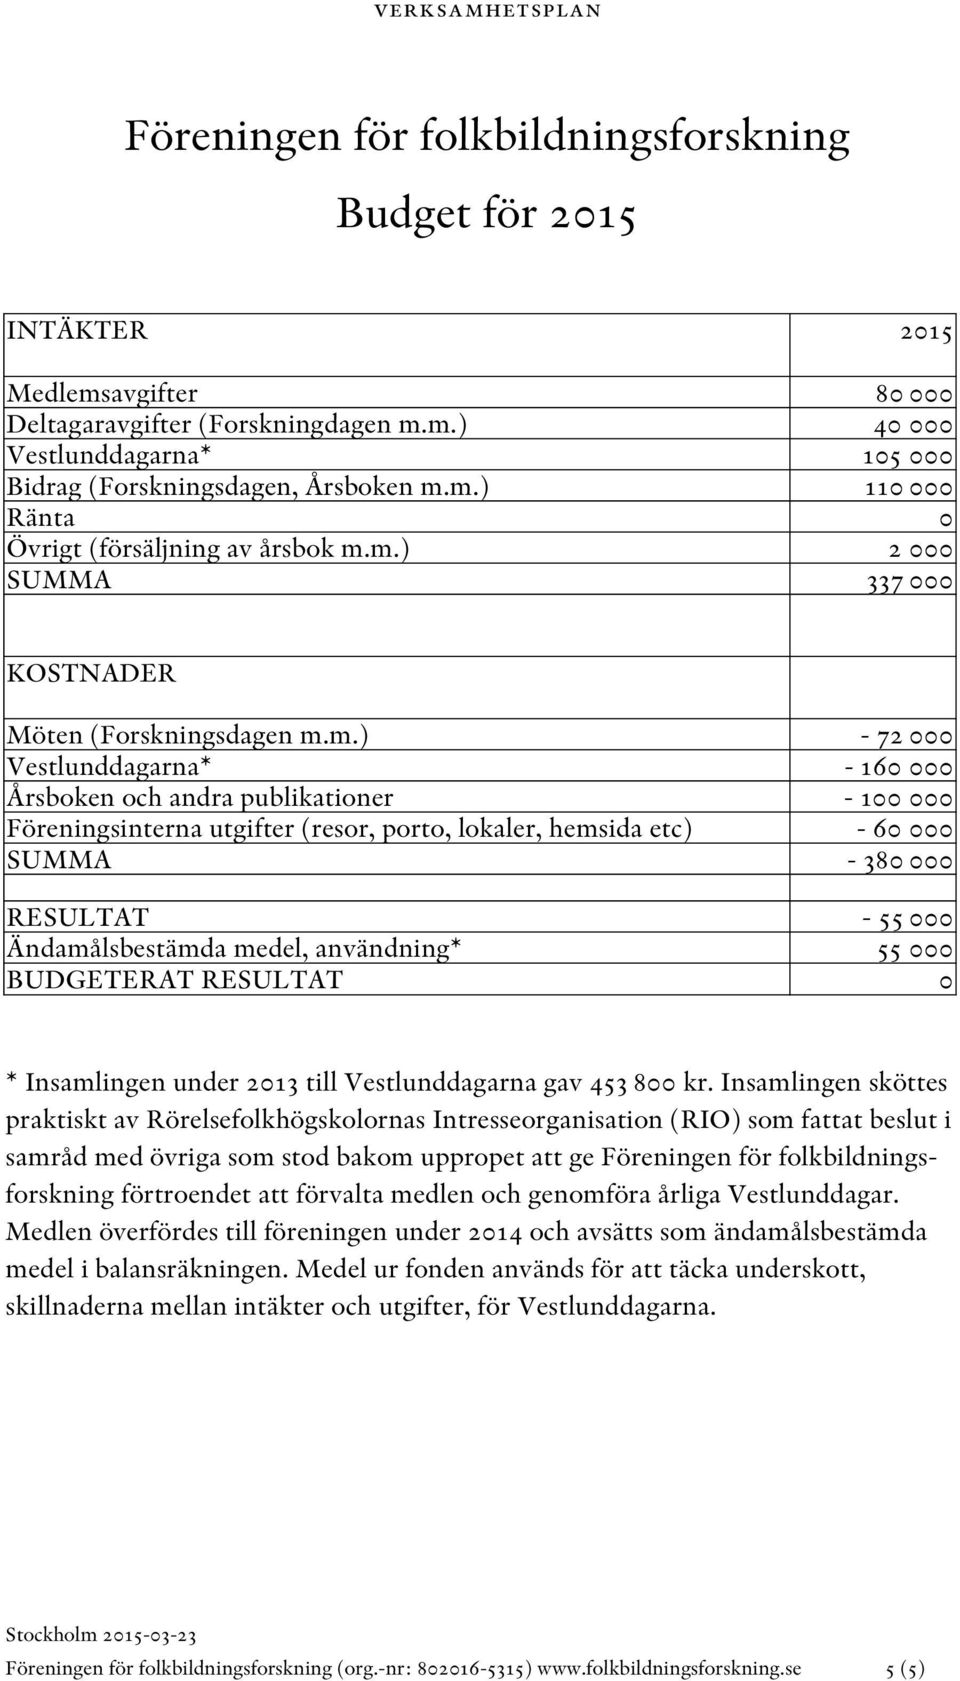 hemsida etc) SUMMA RESULTAT Ändamålsbestämda medel, användning* BUDGETERAT RESULTAT - 72 000-160 000-100 000-60 000-380 000-55 000 55 000 0 * Insamlingen under 2013 till Vestlunddagarna gav 453 800